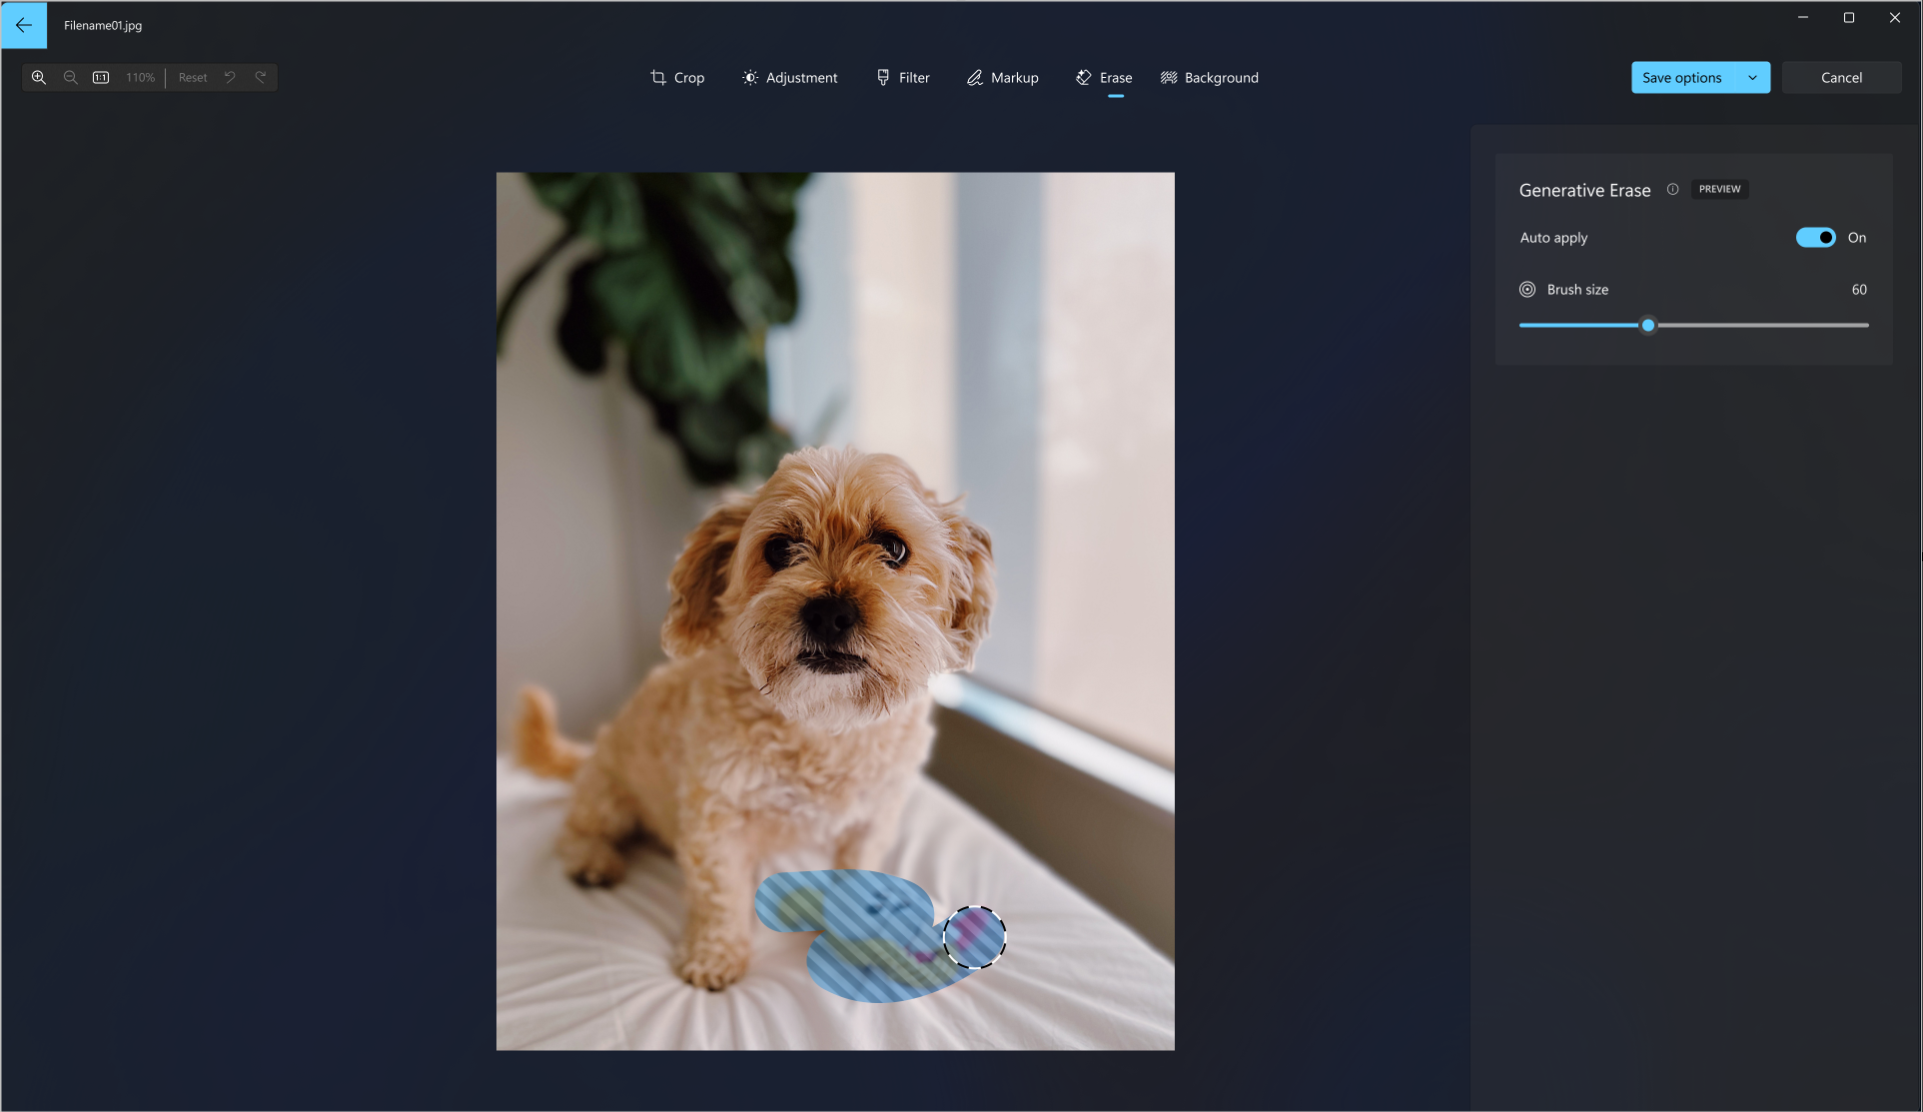 Captura de ecrã da ferramenta de borracha gerada a ser utilizada numa fotografia de um cão para apagar o brinquedo do cão da imagem.